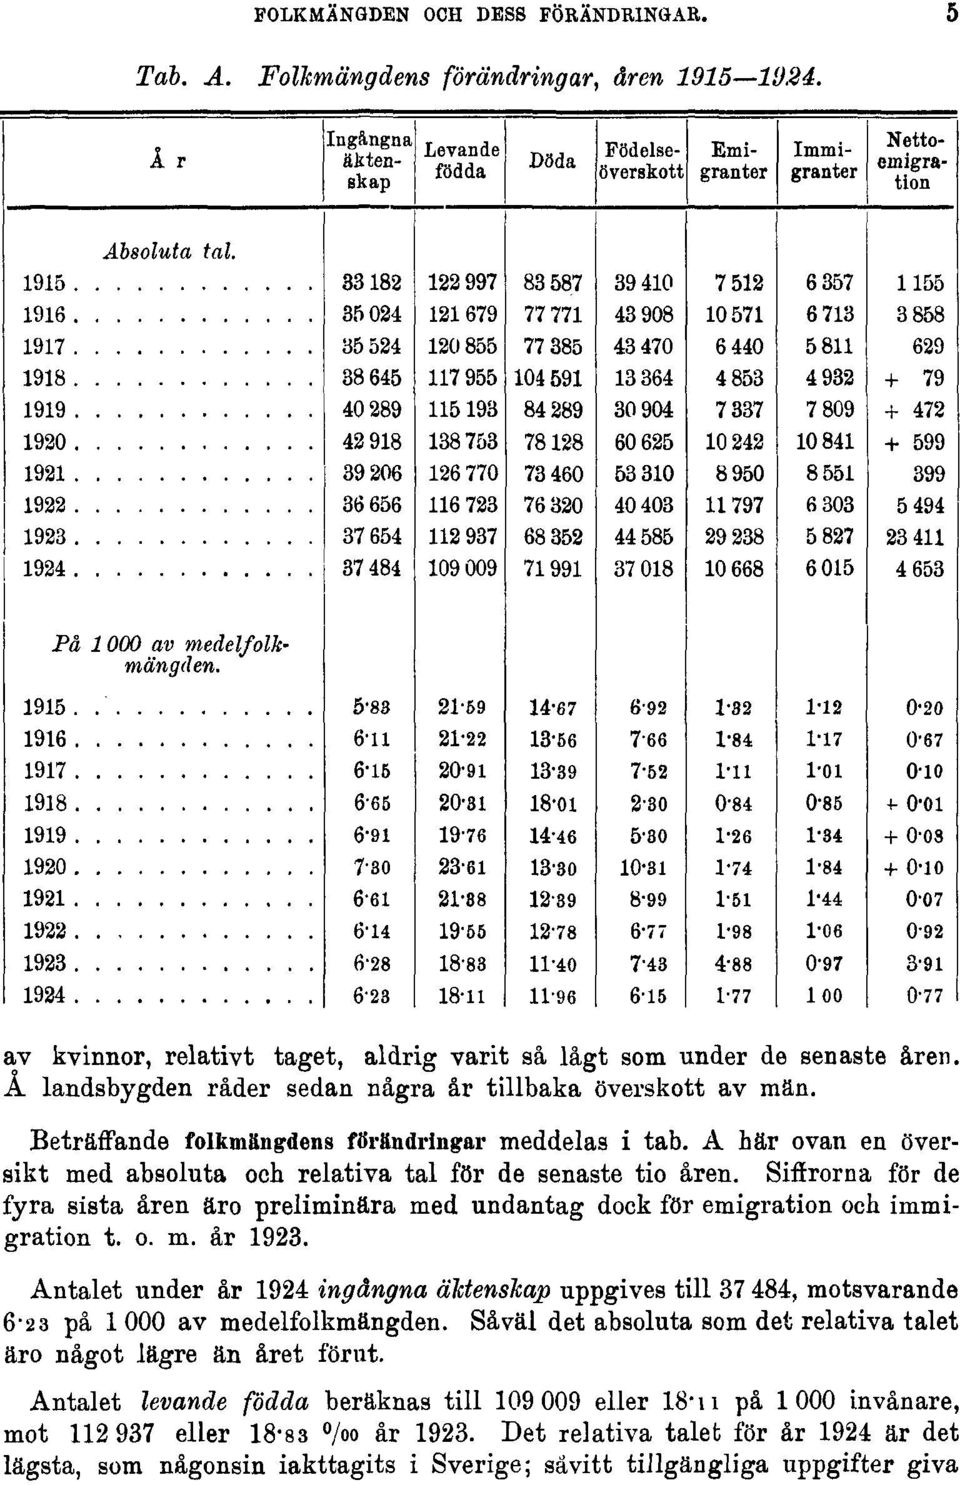 Siffrorna för de fyra sista åren äro preliminära med undantag dock för emigration och immigration t. o. m. år 1923.